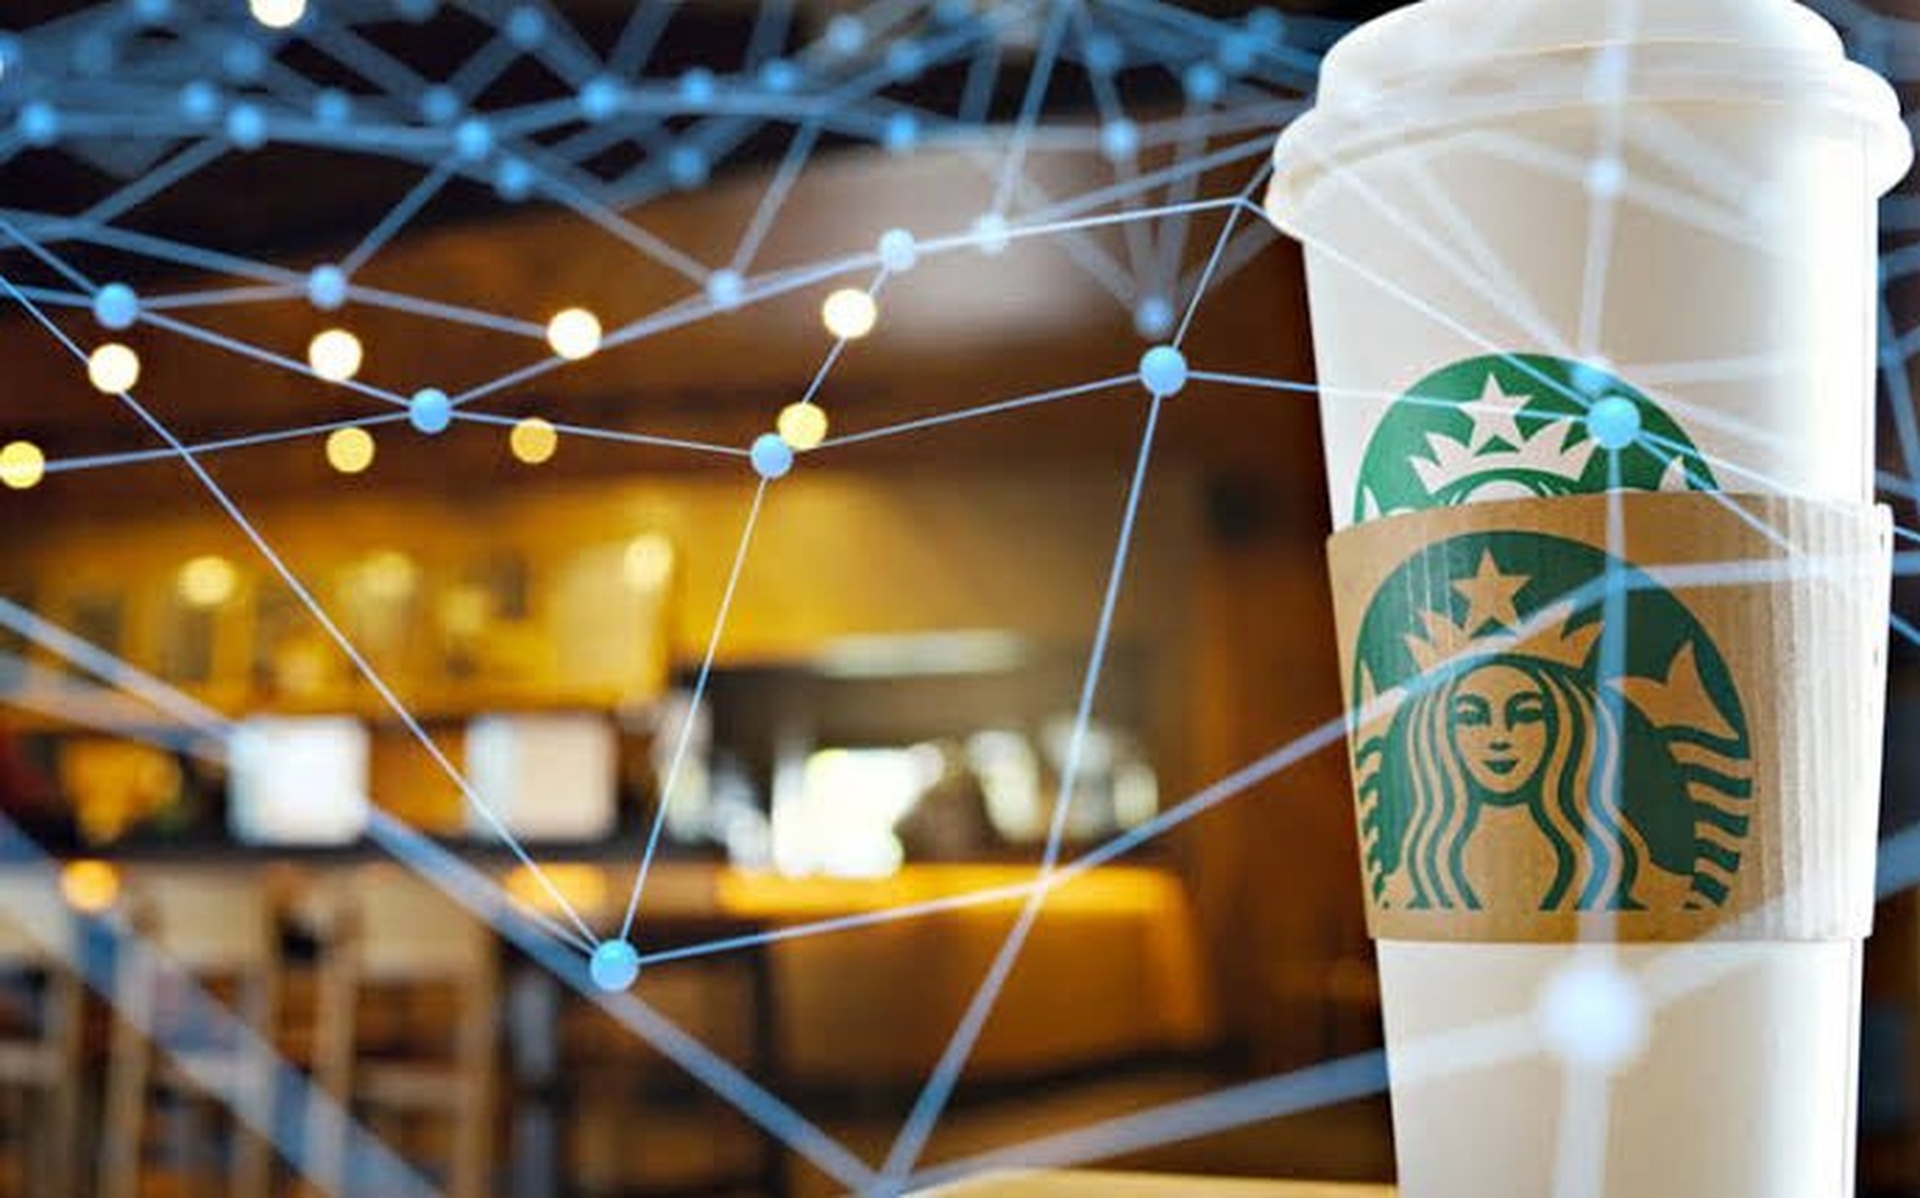 Program lojalnościowy Starbucks Metaverse to platforma stworzona z wykorzystaniem technologii web3 w celu stworzenia biznesowego modelu współdzielonej lojalności i rzeczywistej własności z klientami.